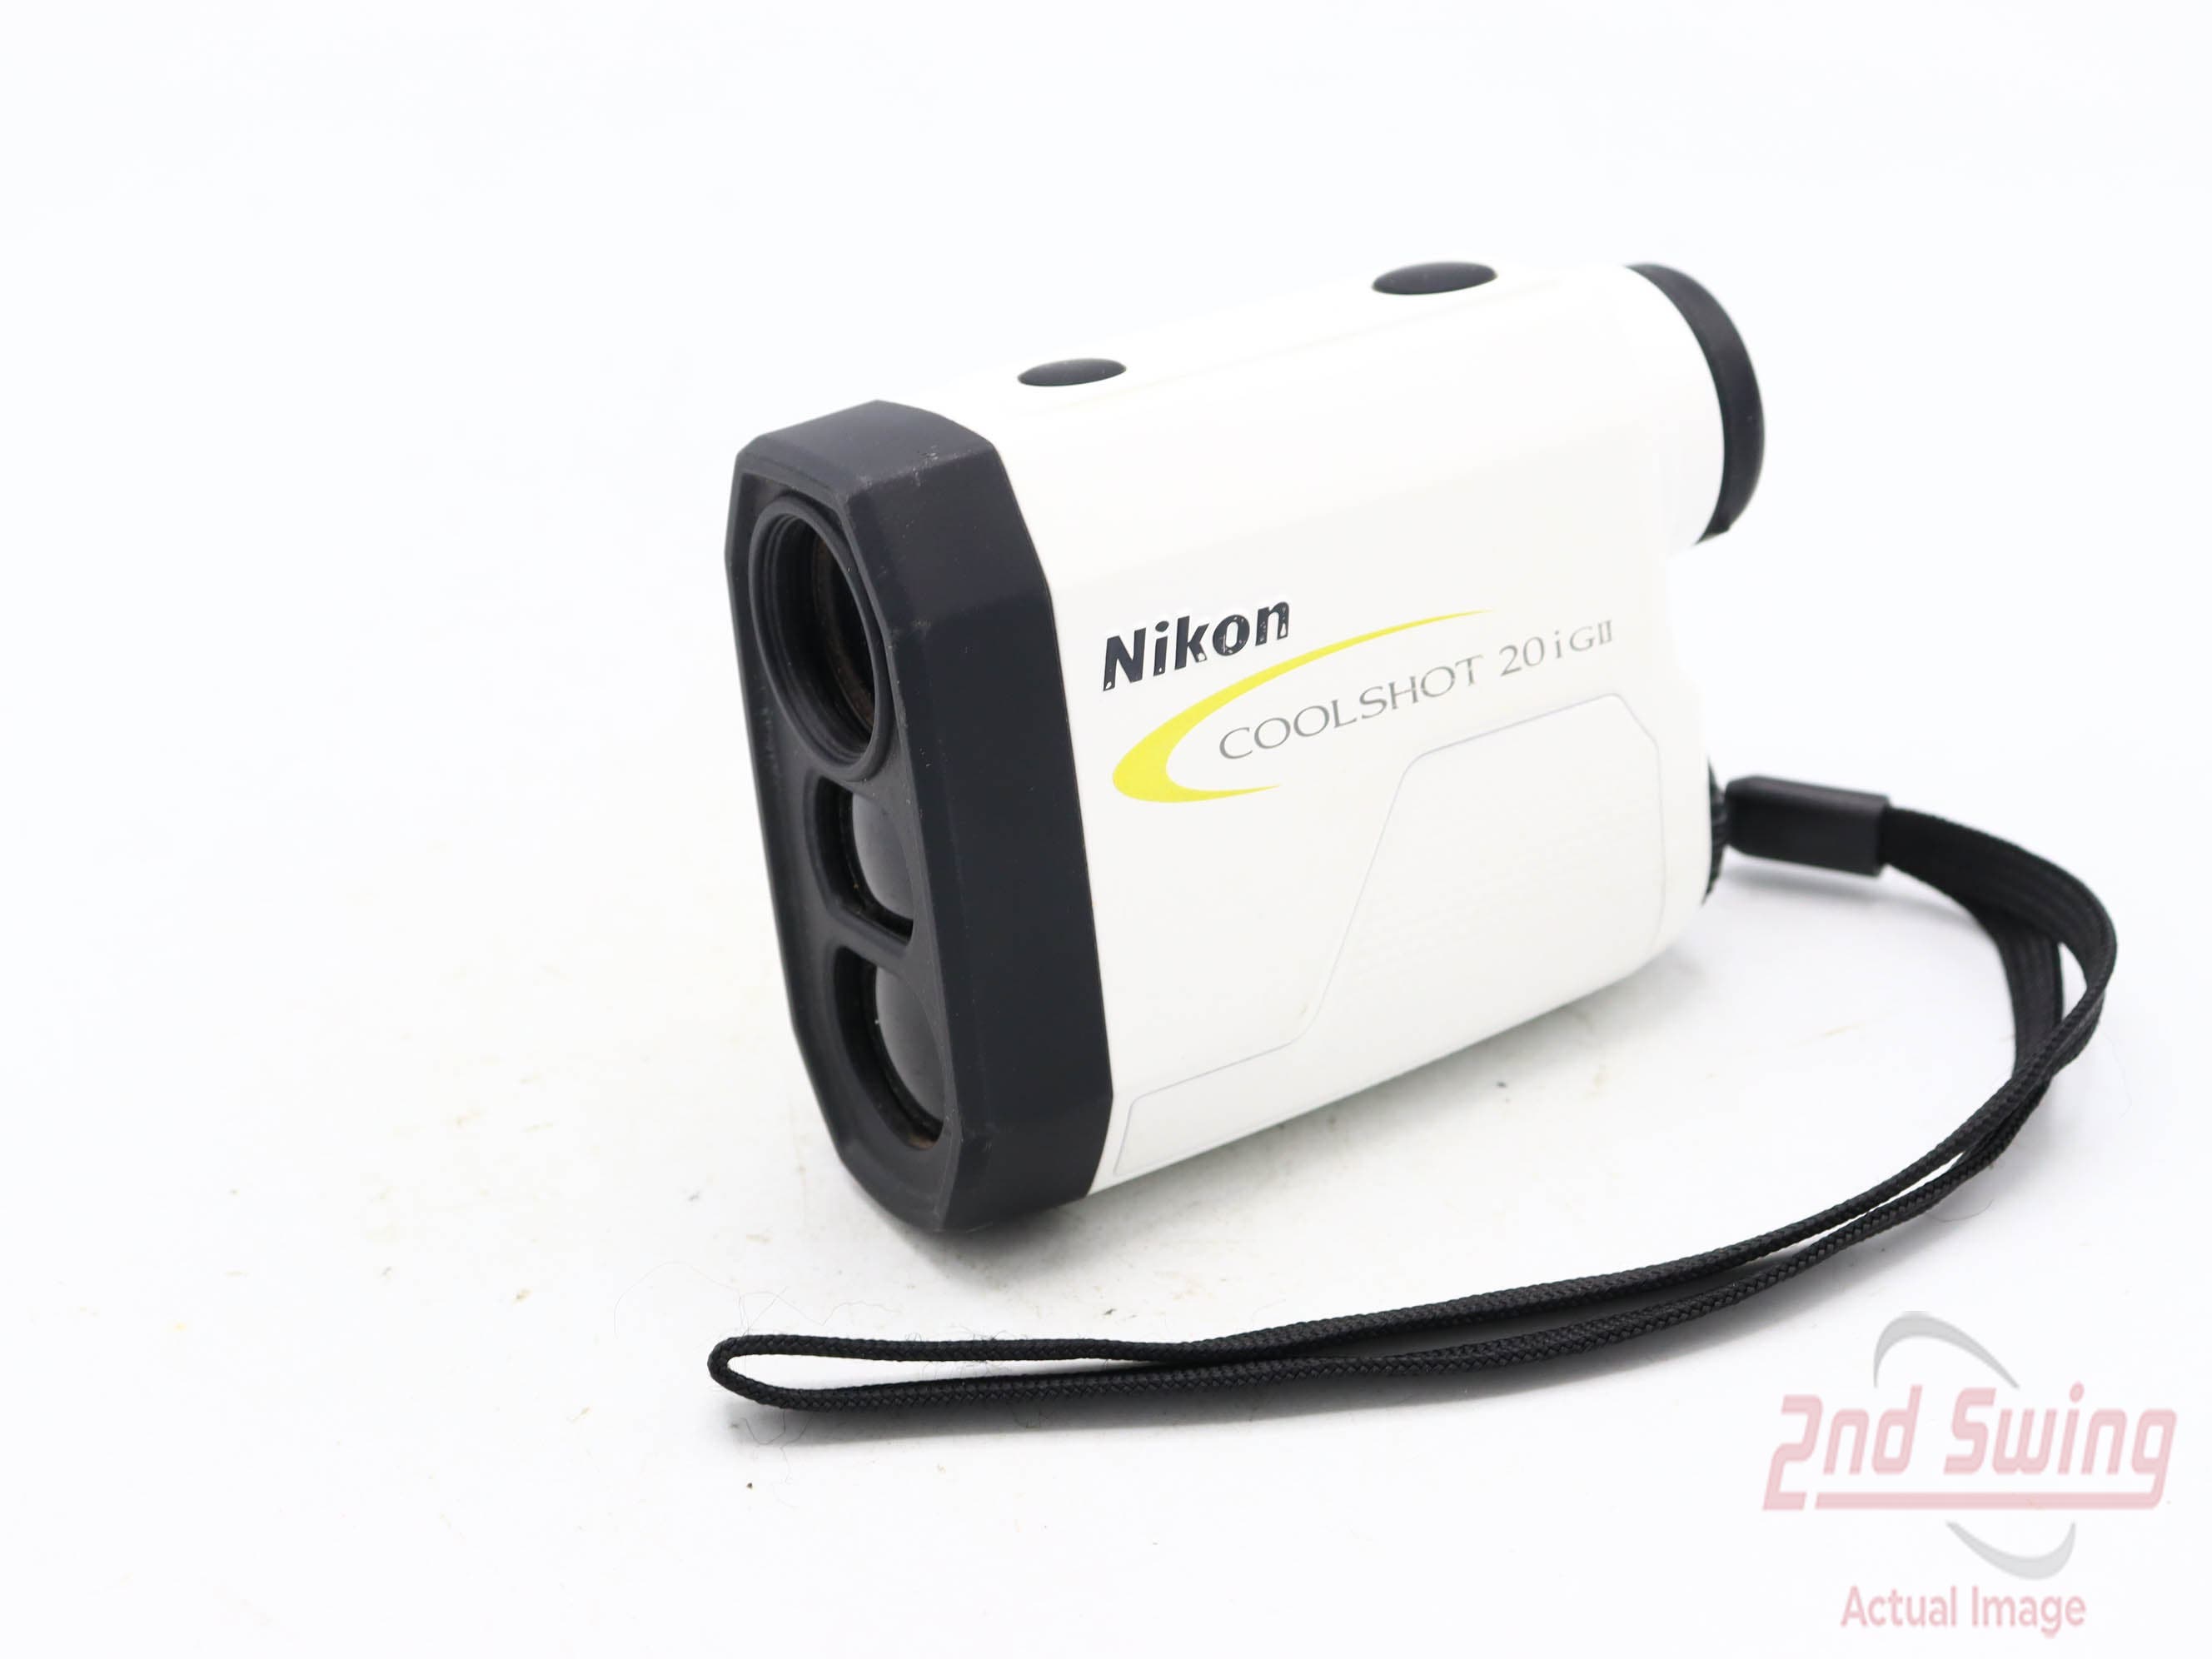 Nikon Coolshot 20i GII Golf GPS & Rangefinders (D-72332608032)